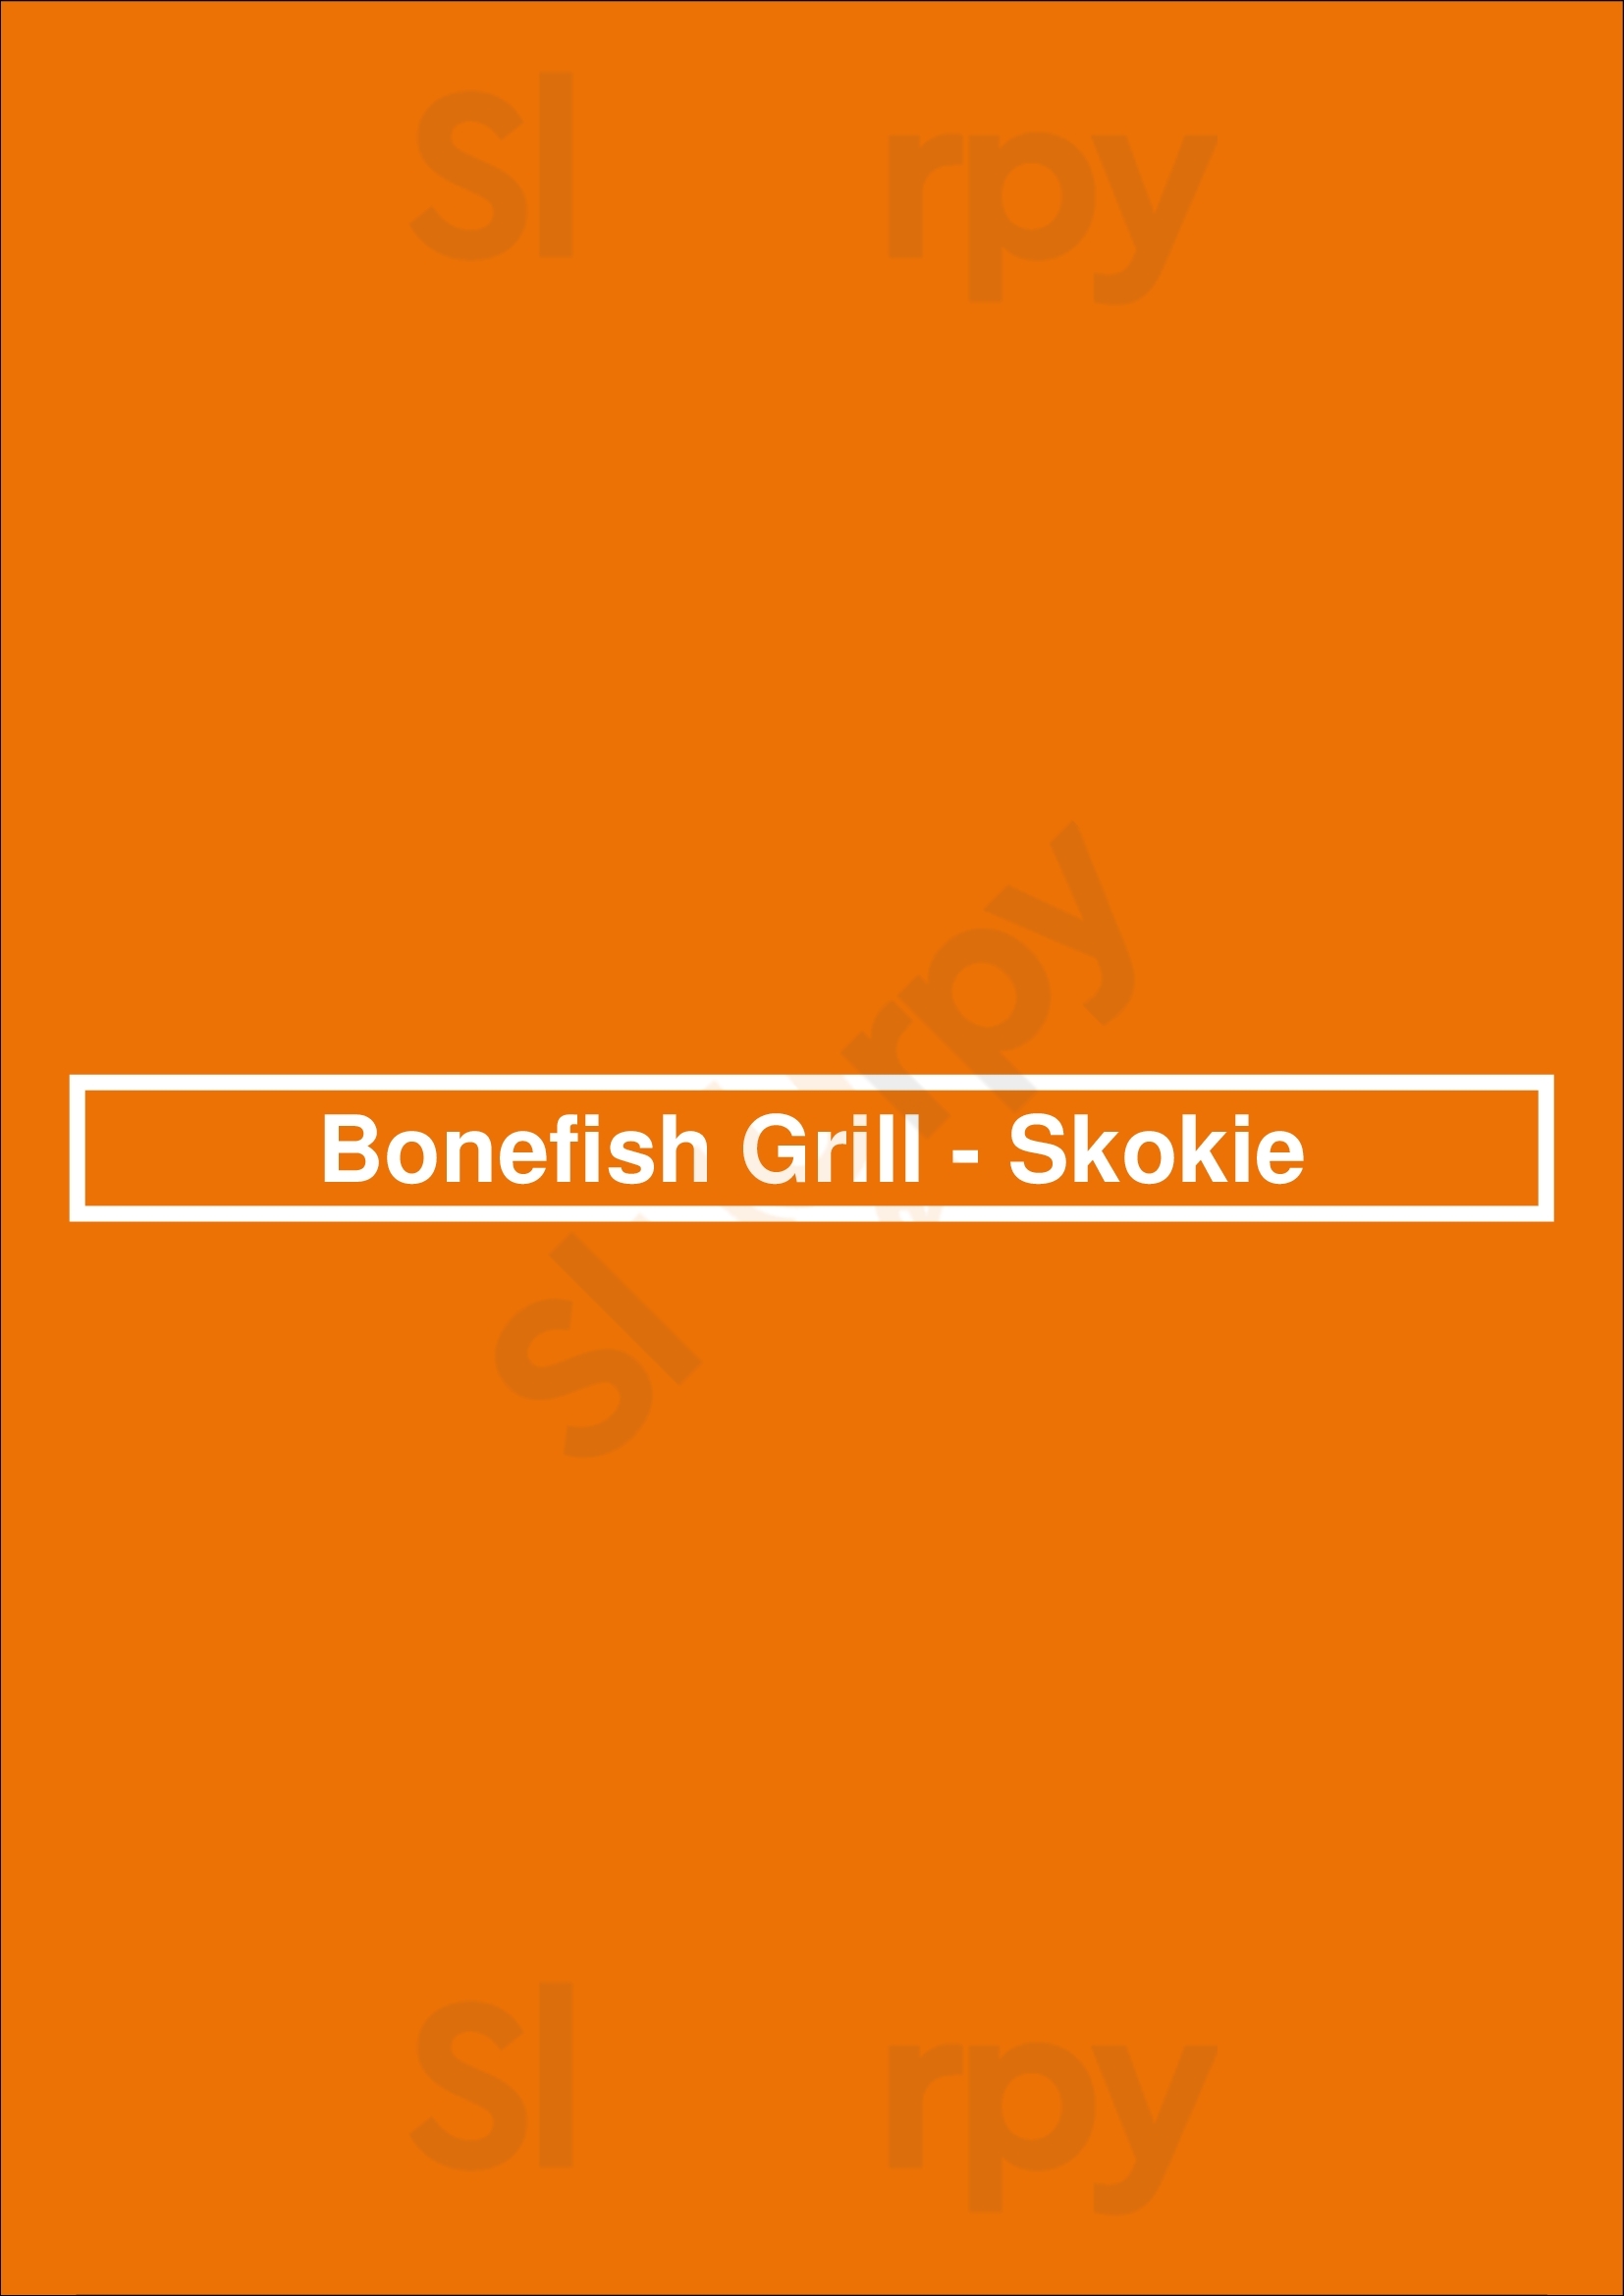 Bonefish Grill - Skokie Skokie Menu - 1